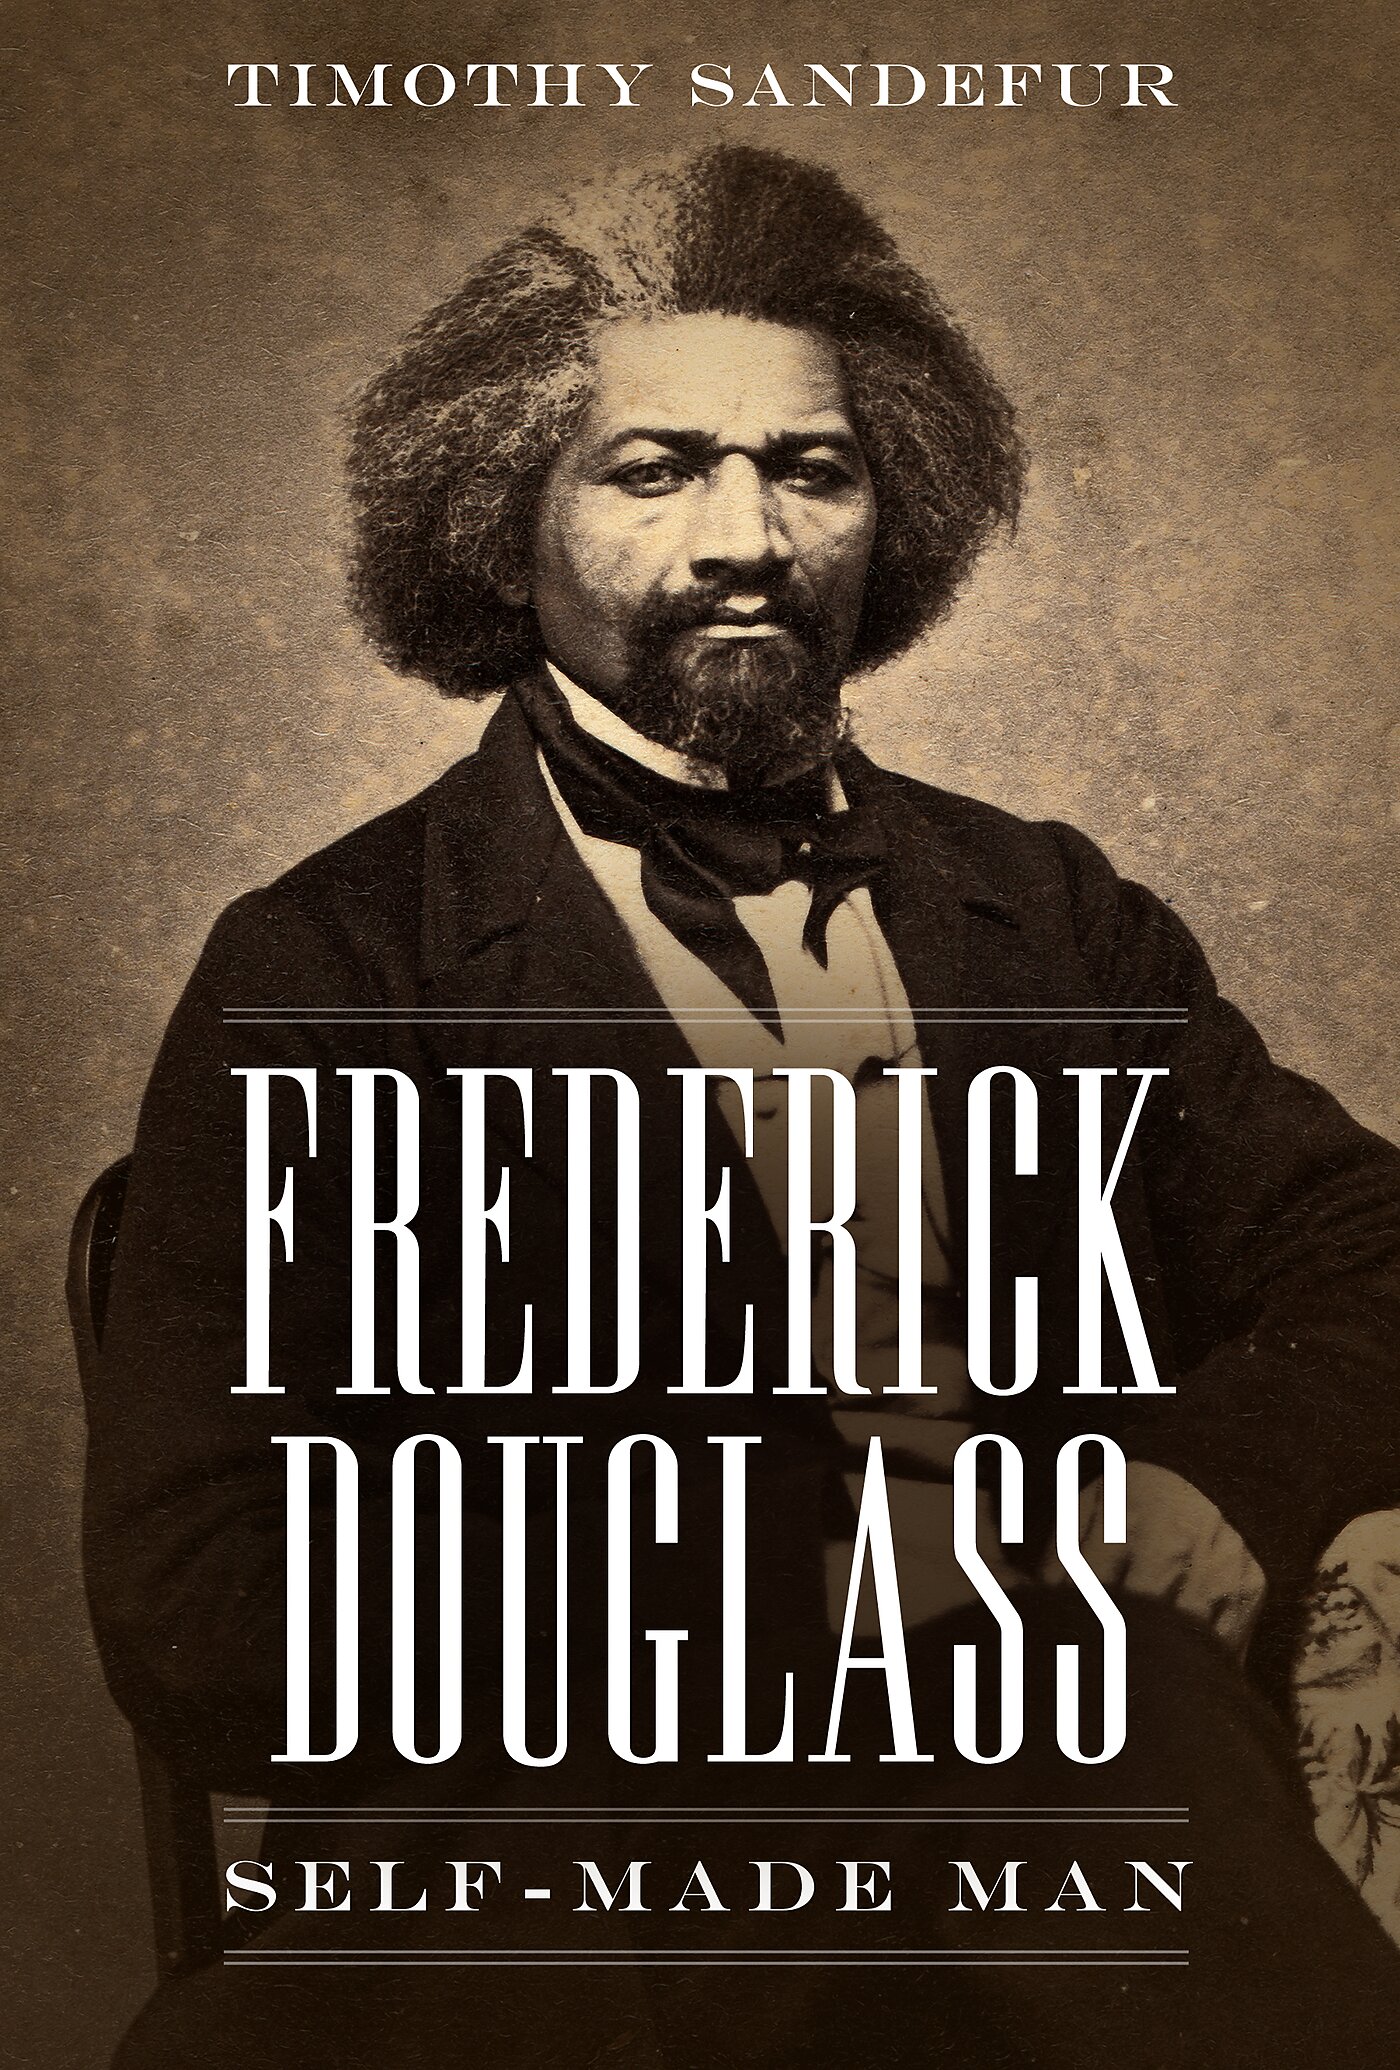 Frederick Douglass: Self-Made Man book cover